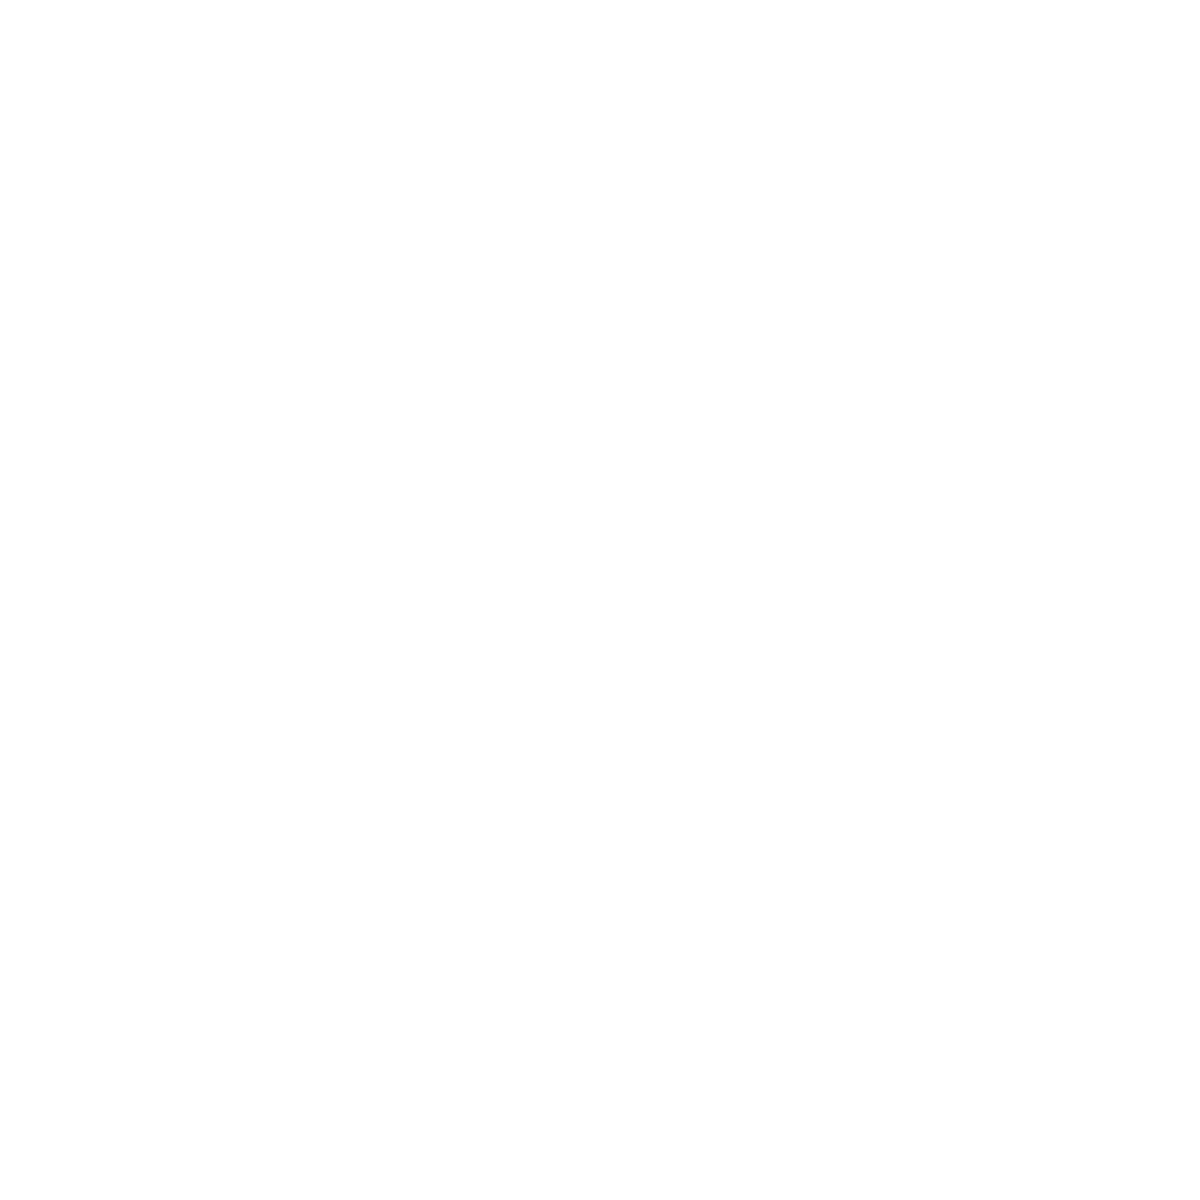 ASHLEY Band